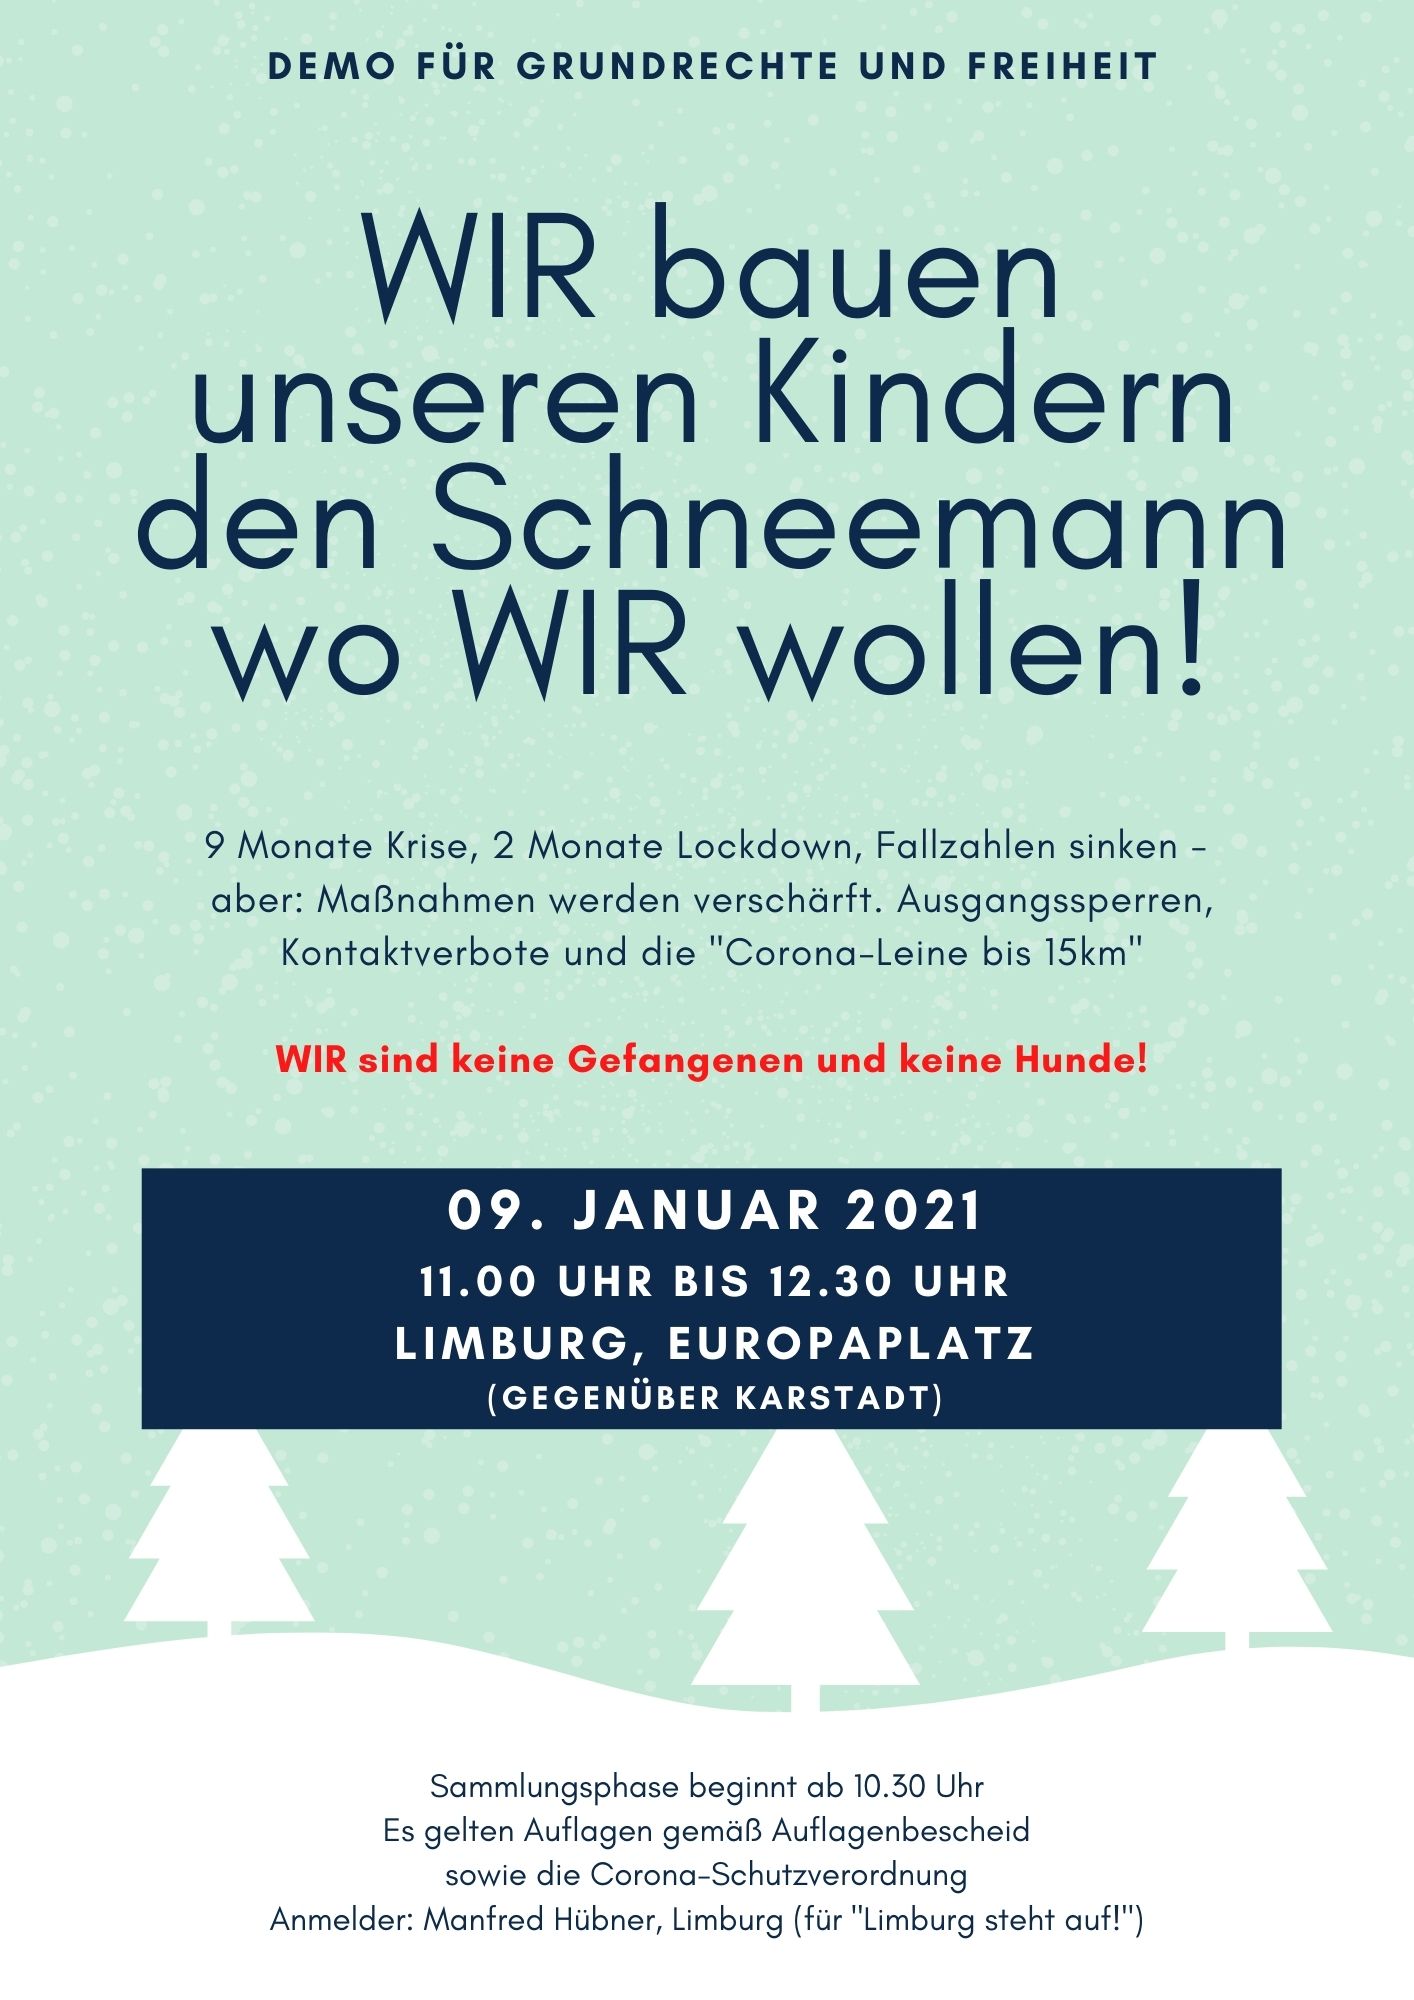 Aufruf zur Demo am 09.01.2021 in Limburg